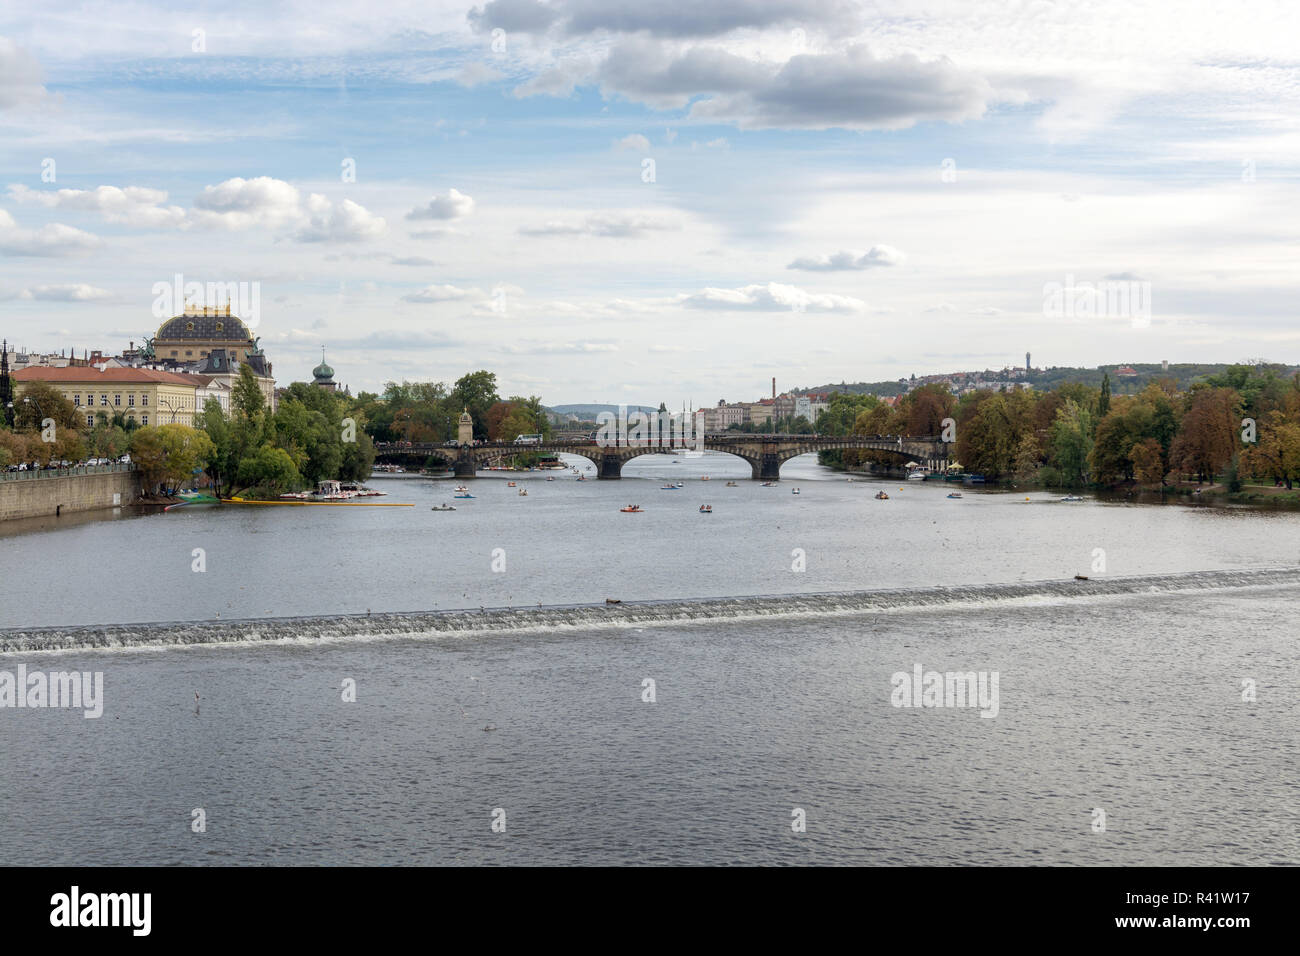 Panorama du secteur riverain de Prague sur un jour nuageux, avec la rivière Vltava, pont de la Légion et le Théâtre National landmarks in sight Banque D'Images